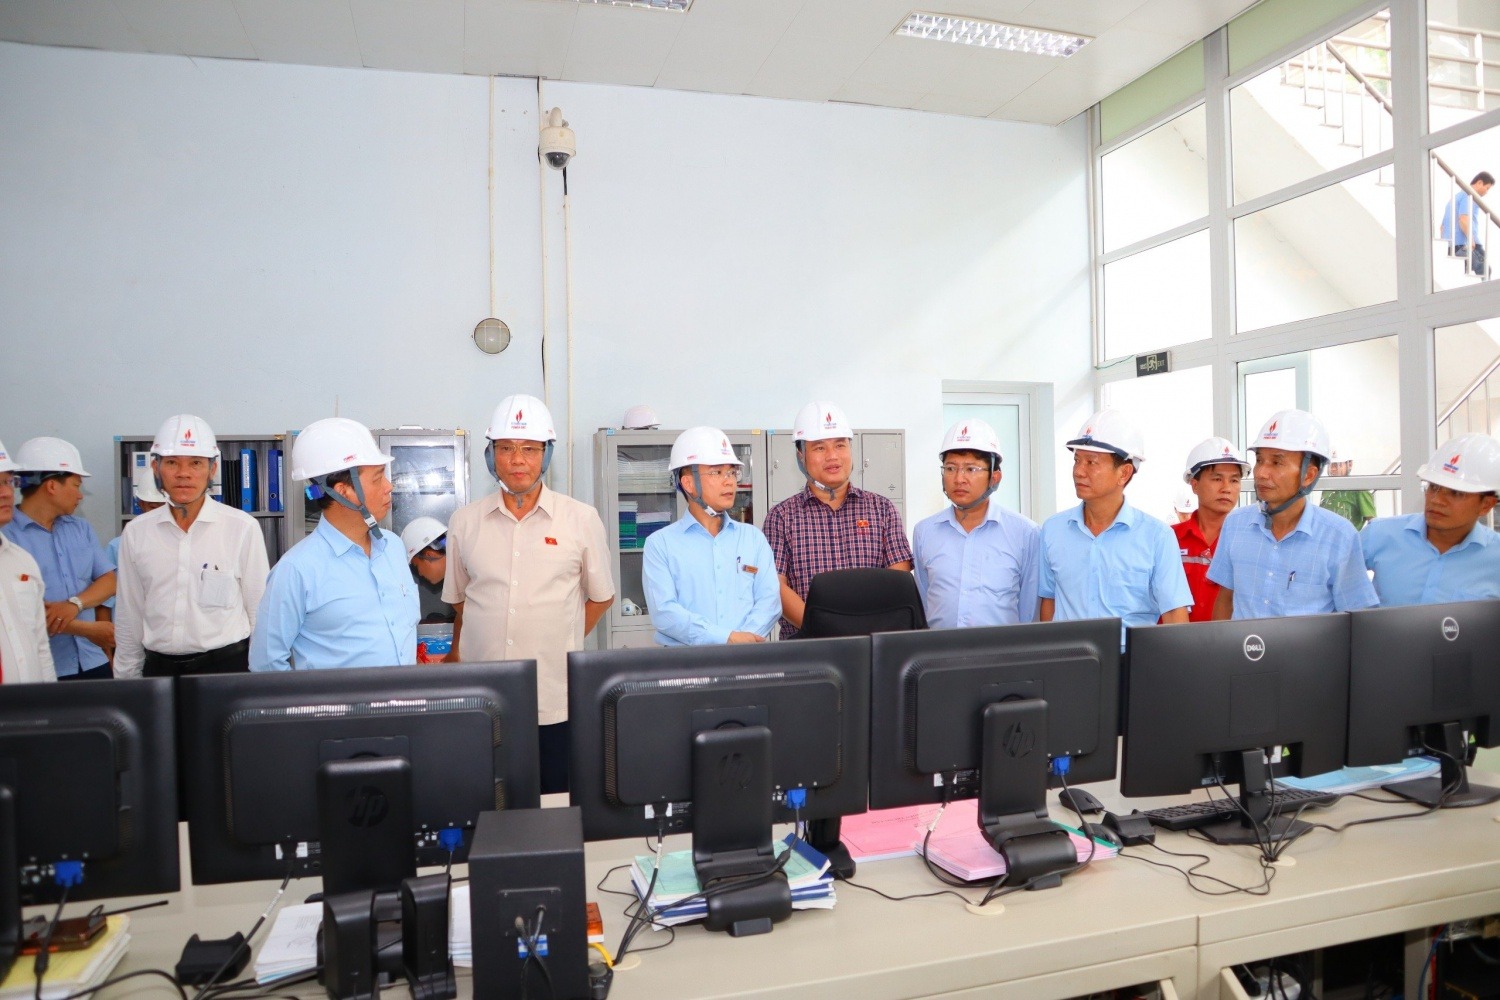 Thượng tướng Trần Quang Phương - Phó Chủ tịch Quốc hội thăm và làm việc tại Thủy điện Đakđrinh